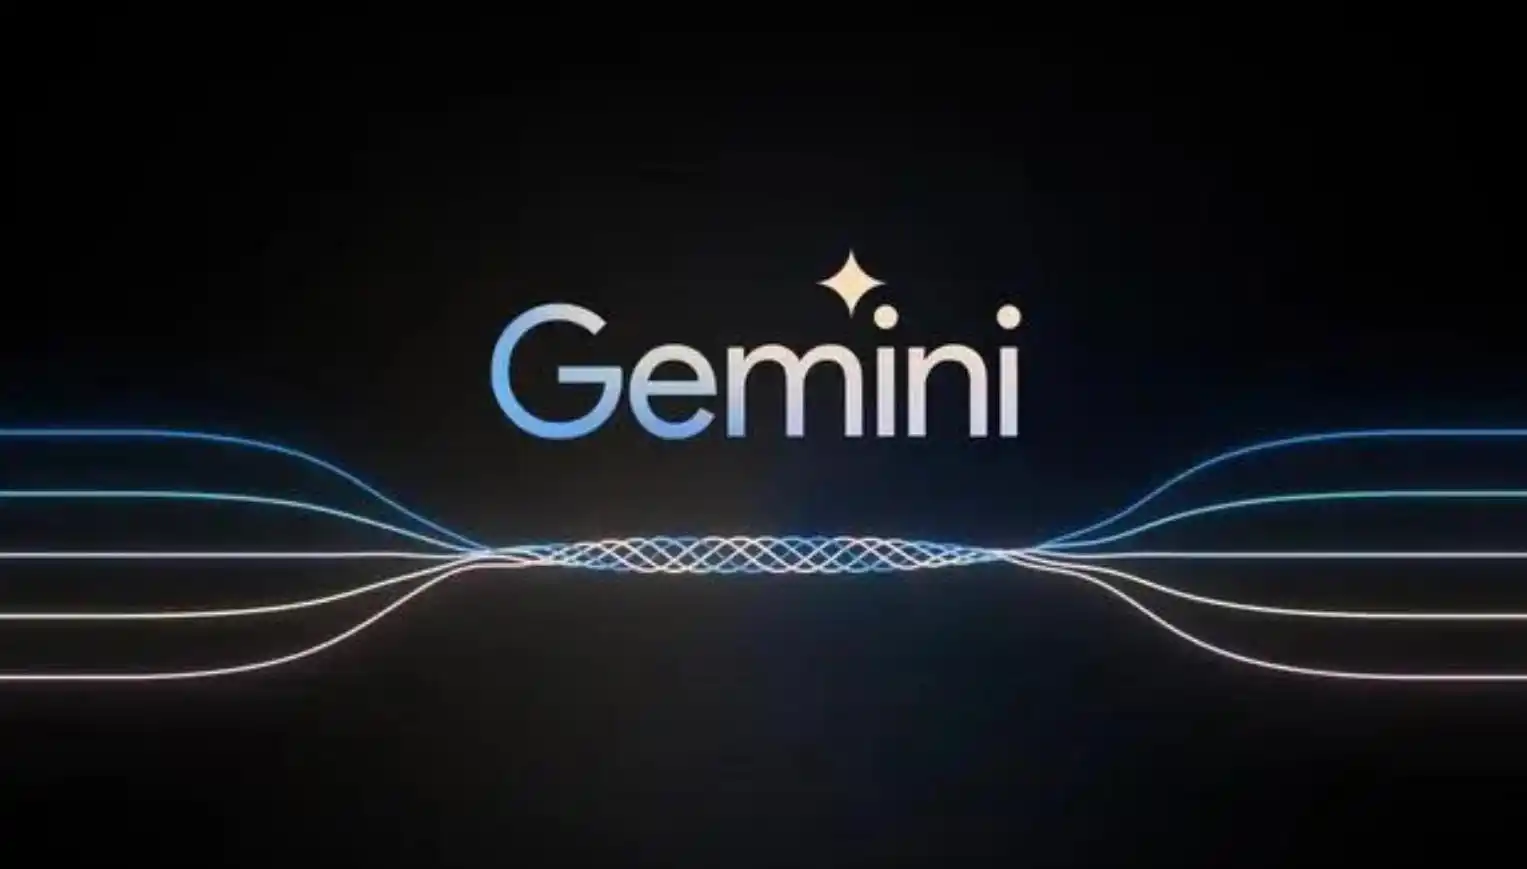 传闻苹果将牵手谷歌引入大模型 有望为iPhone引入Gemini大模型